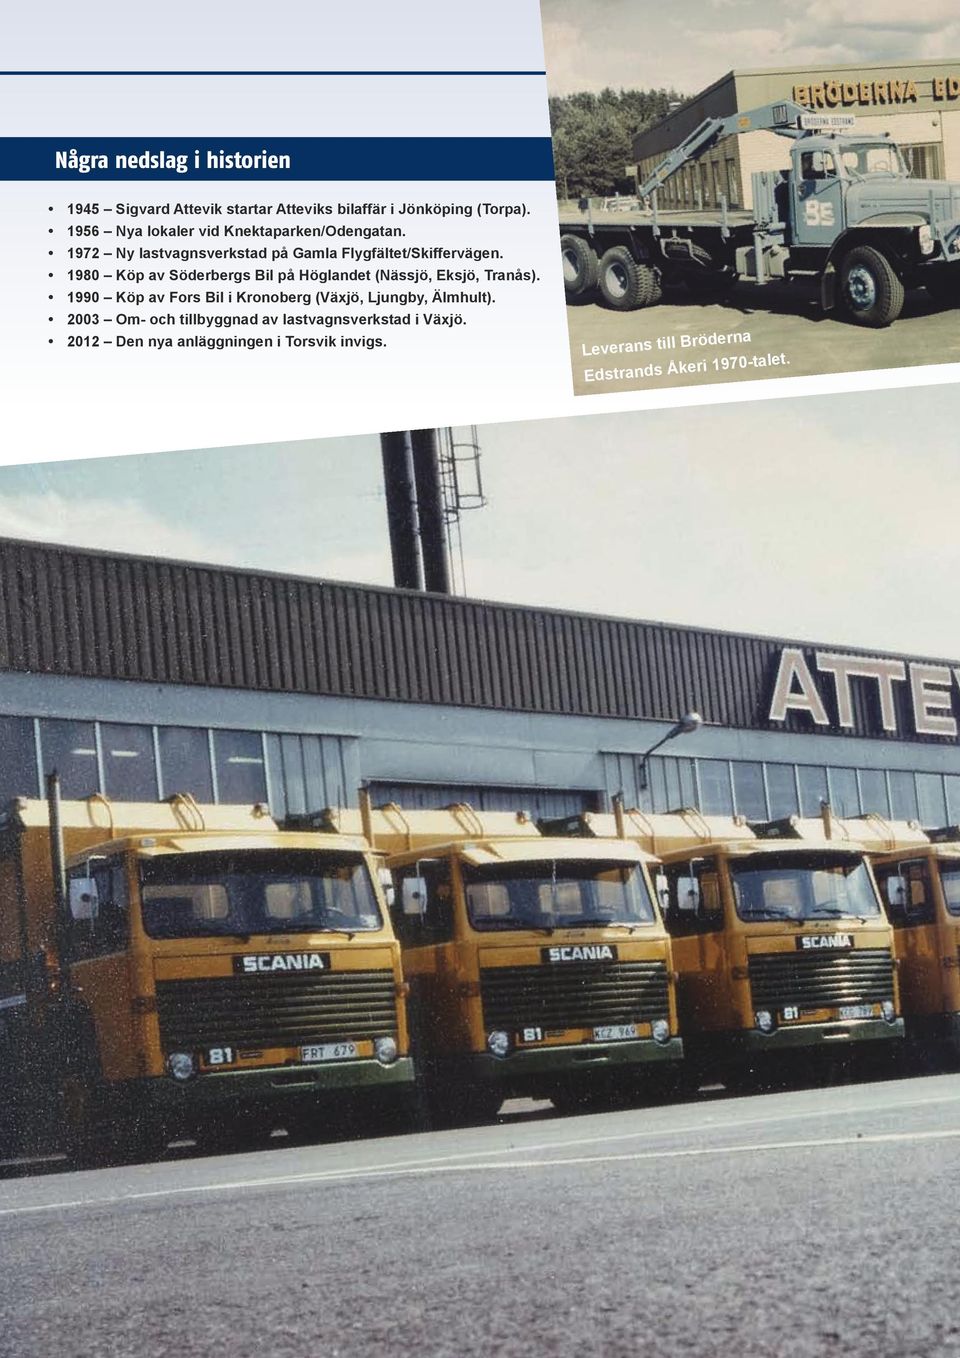 1980 Köp av Söderbergs Bil på Höglandet (Nässjö, Eksjö, Tranås).